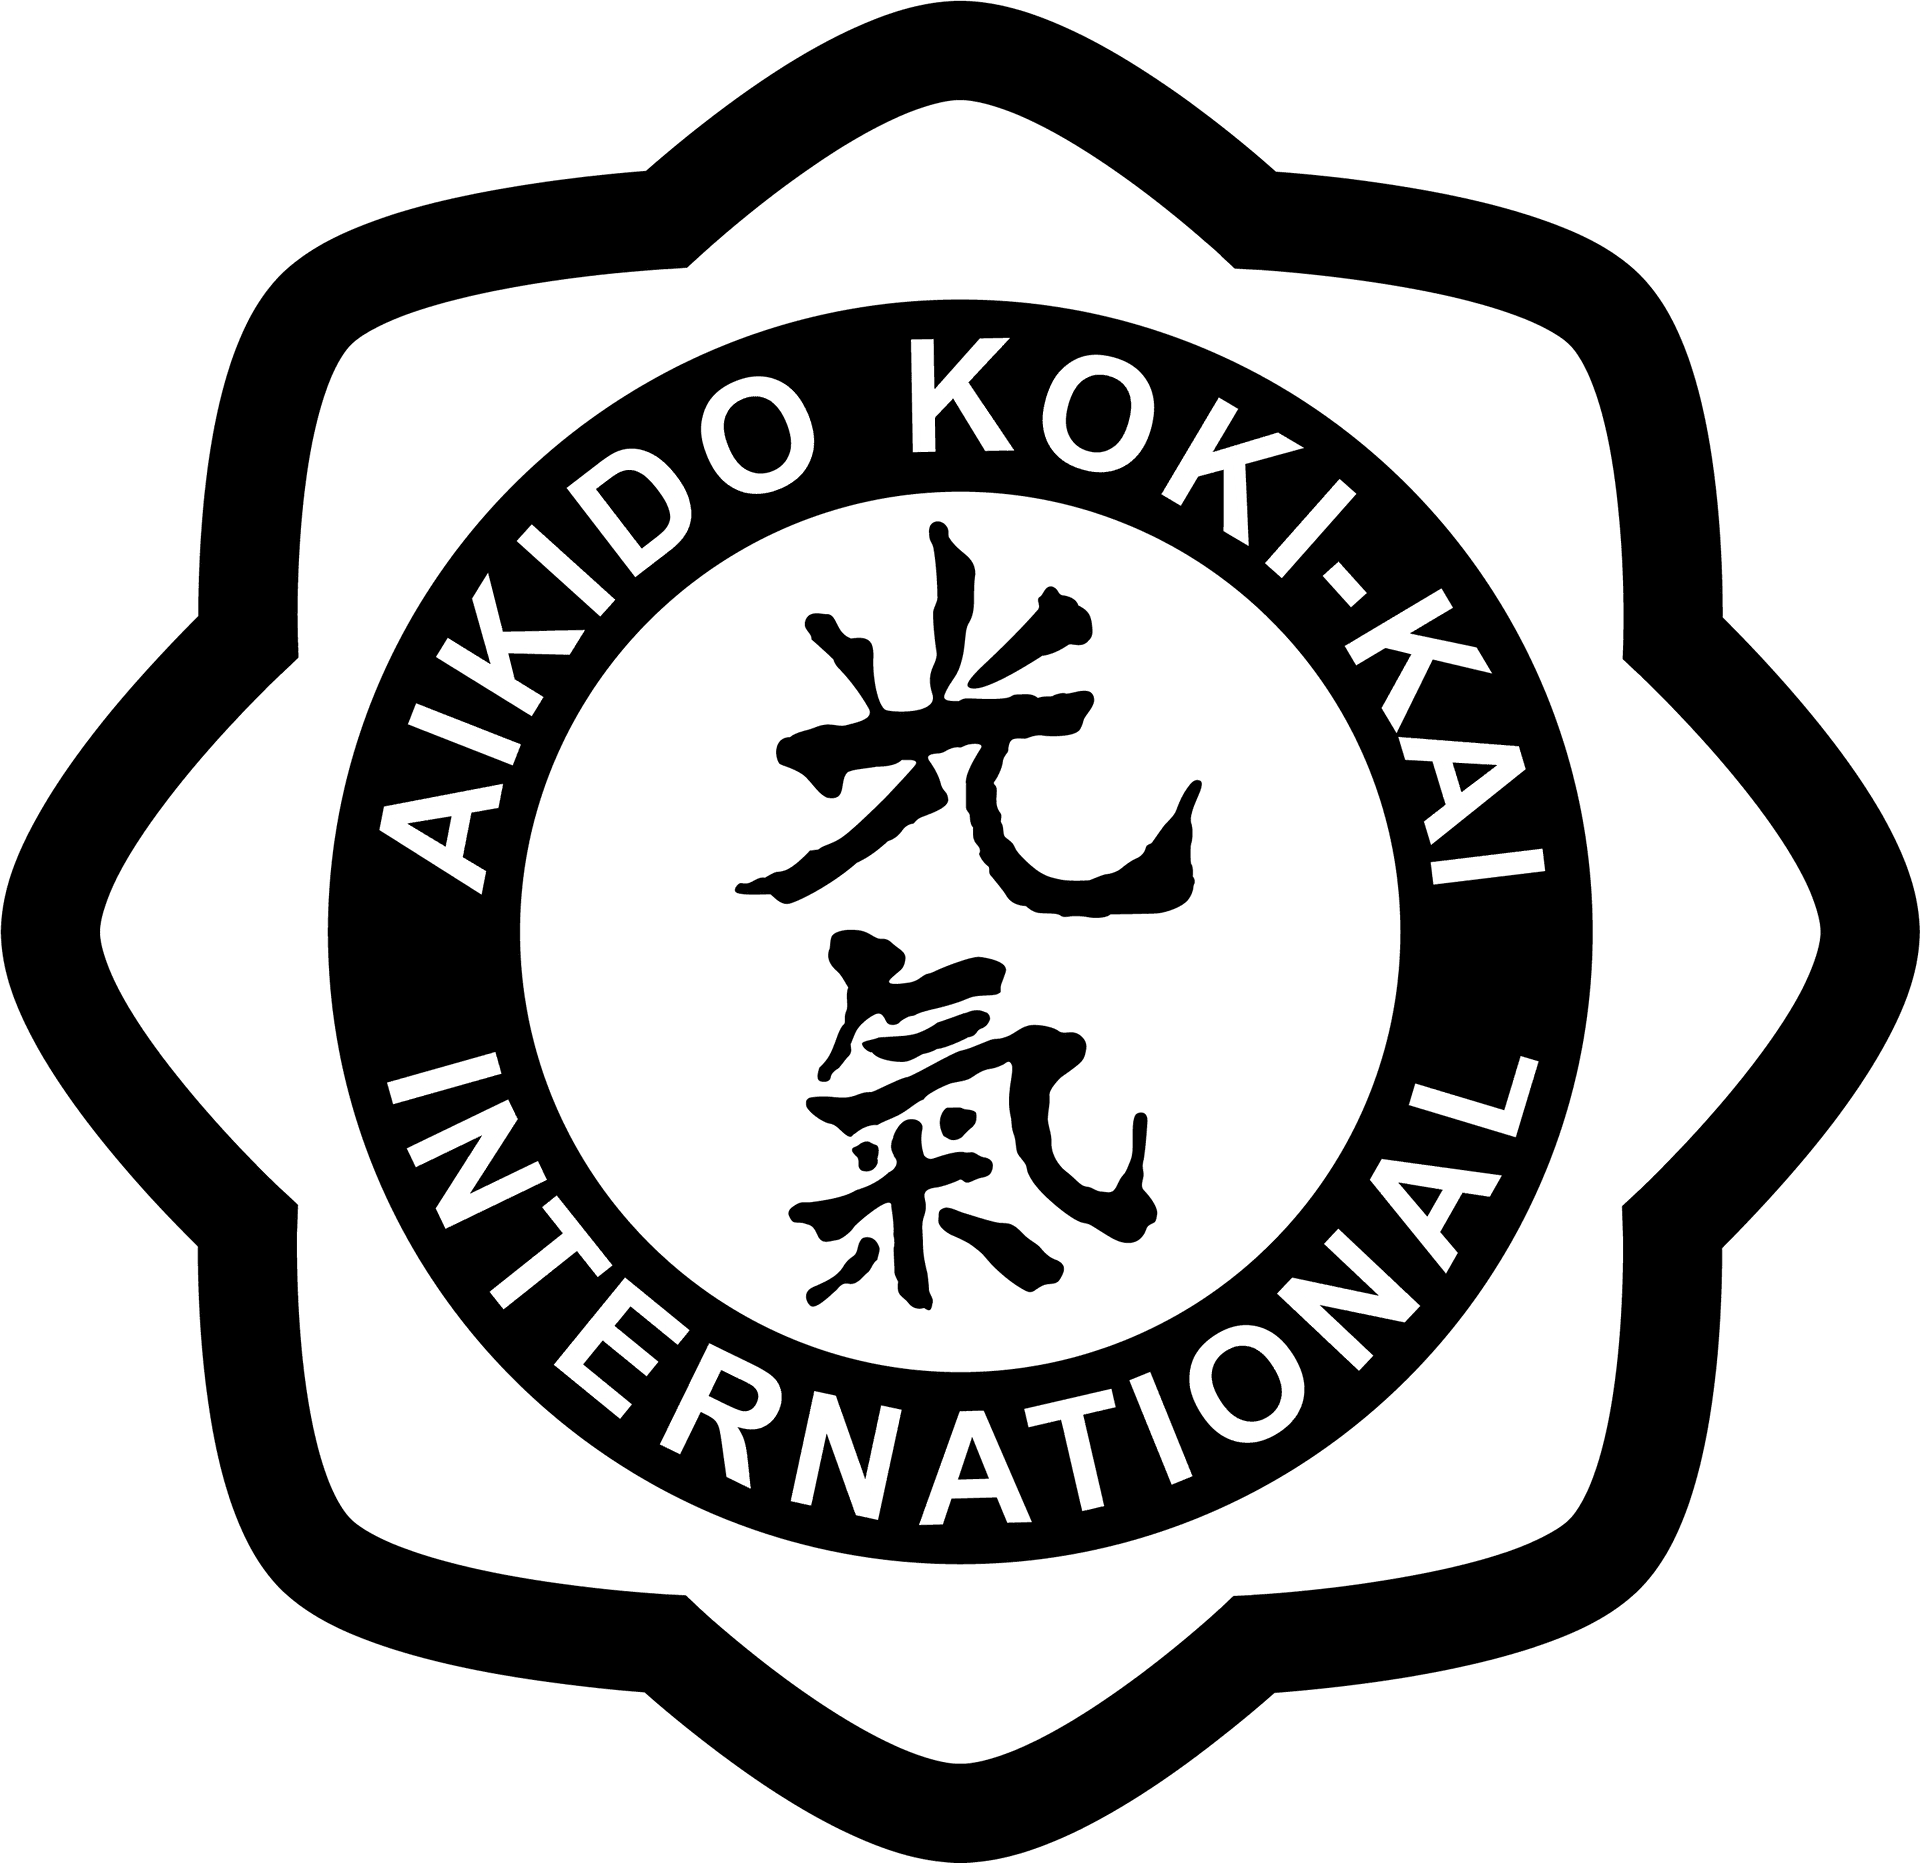 Aikido Kokikai International Emblem PNG image